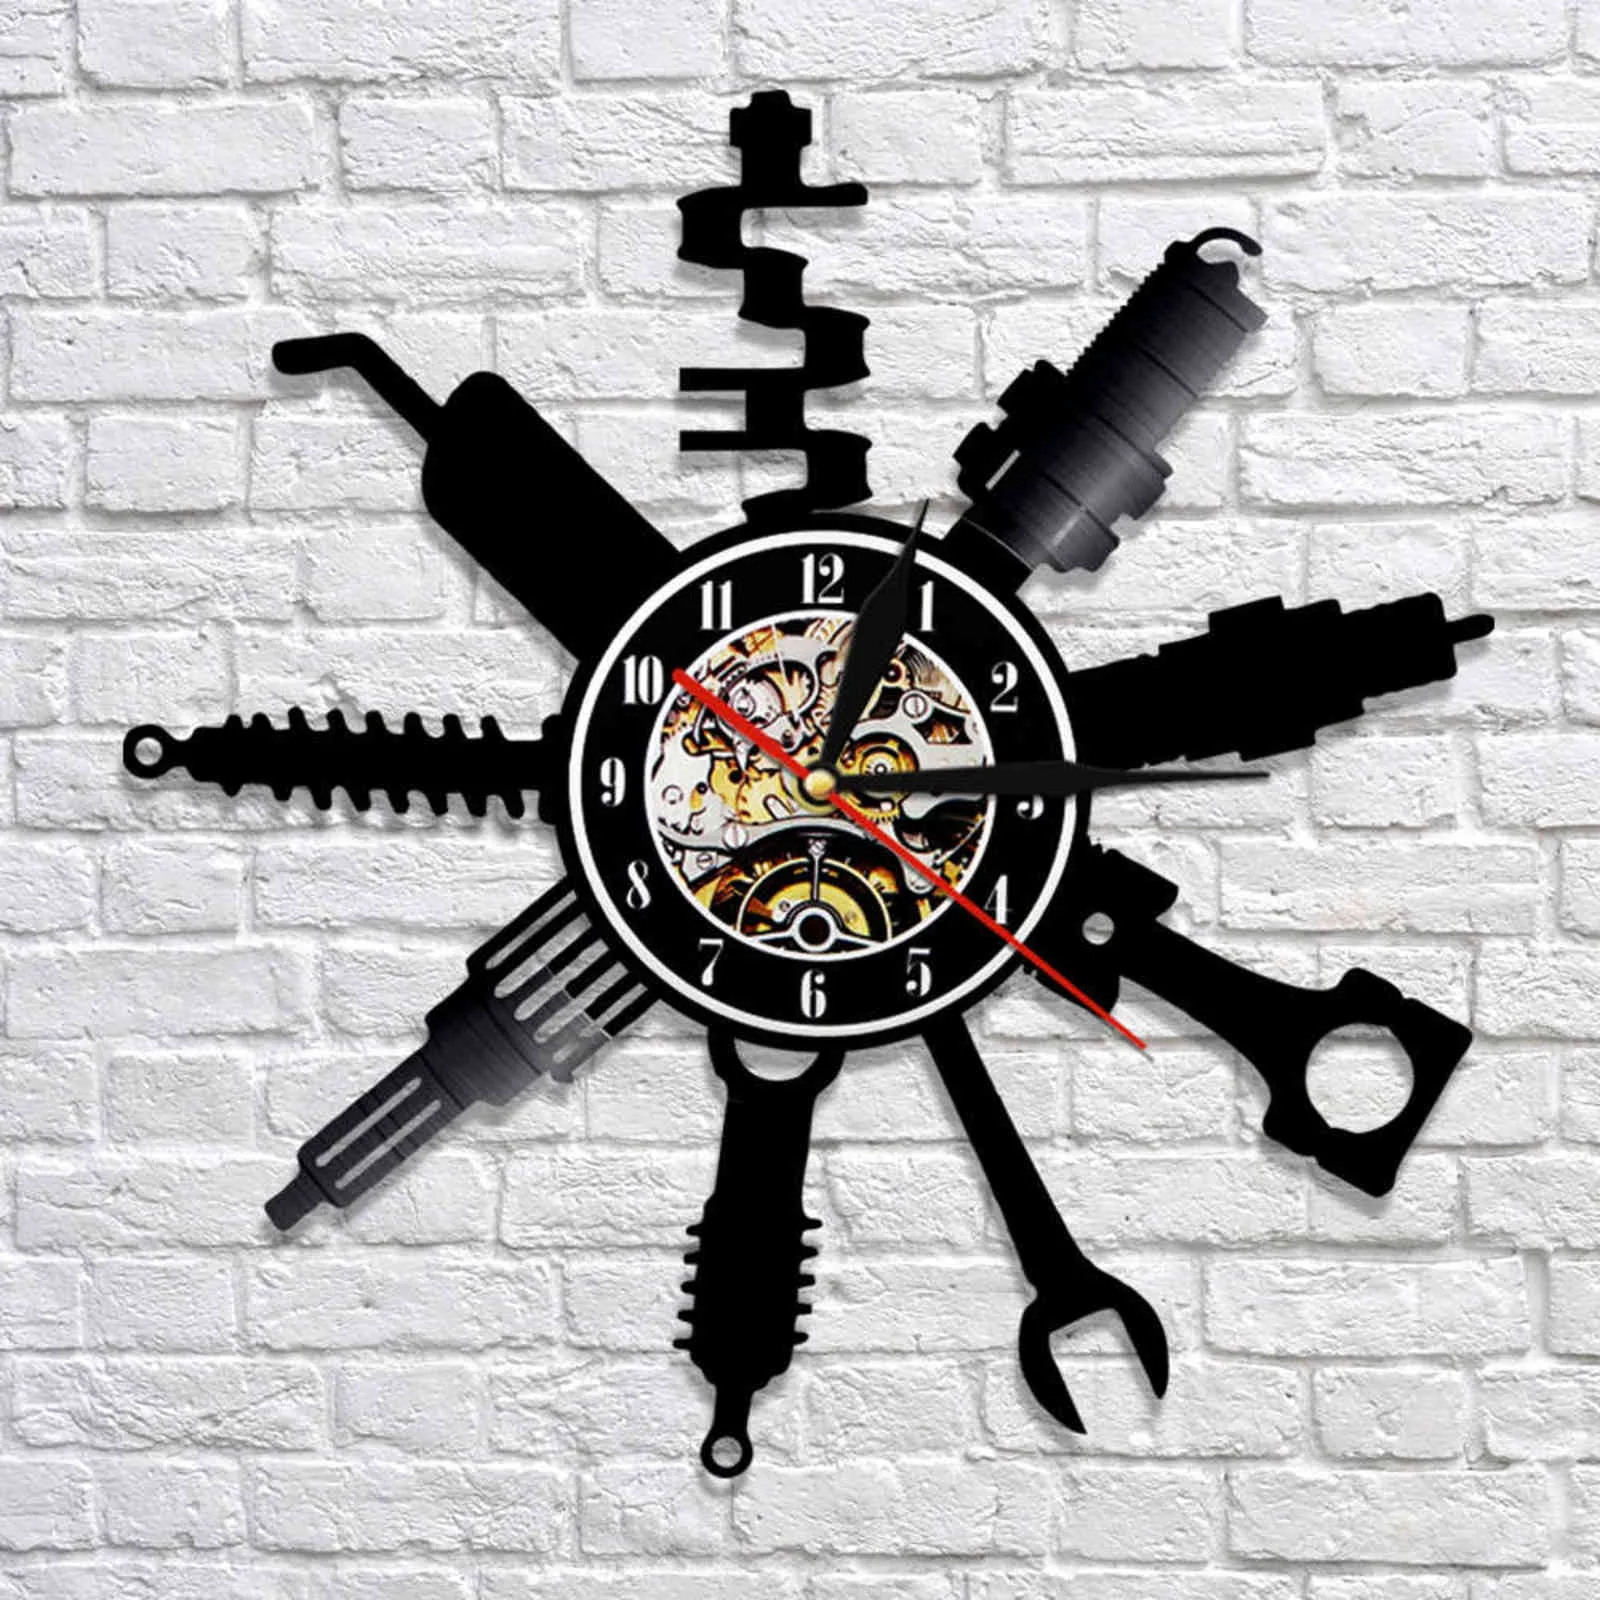 自動車修理店の壁のサイン装飾モダン時計車メカニックサービスワークショップレコードガレージ修理マンギフト2111301112944